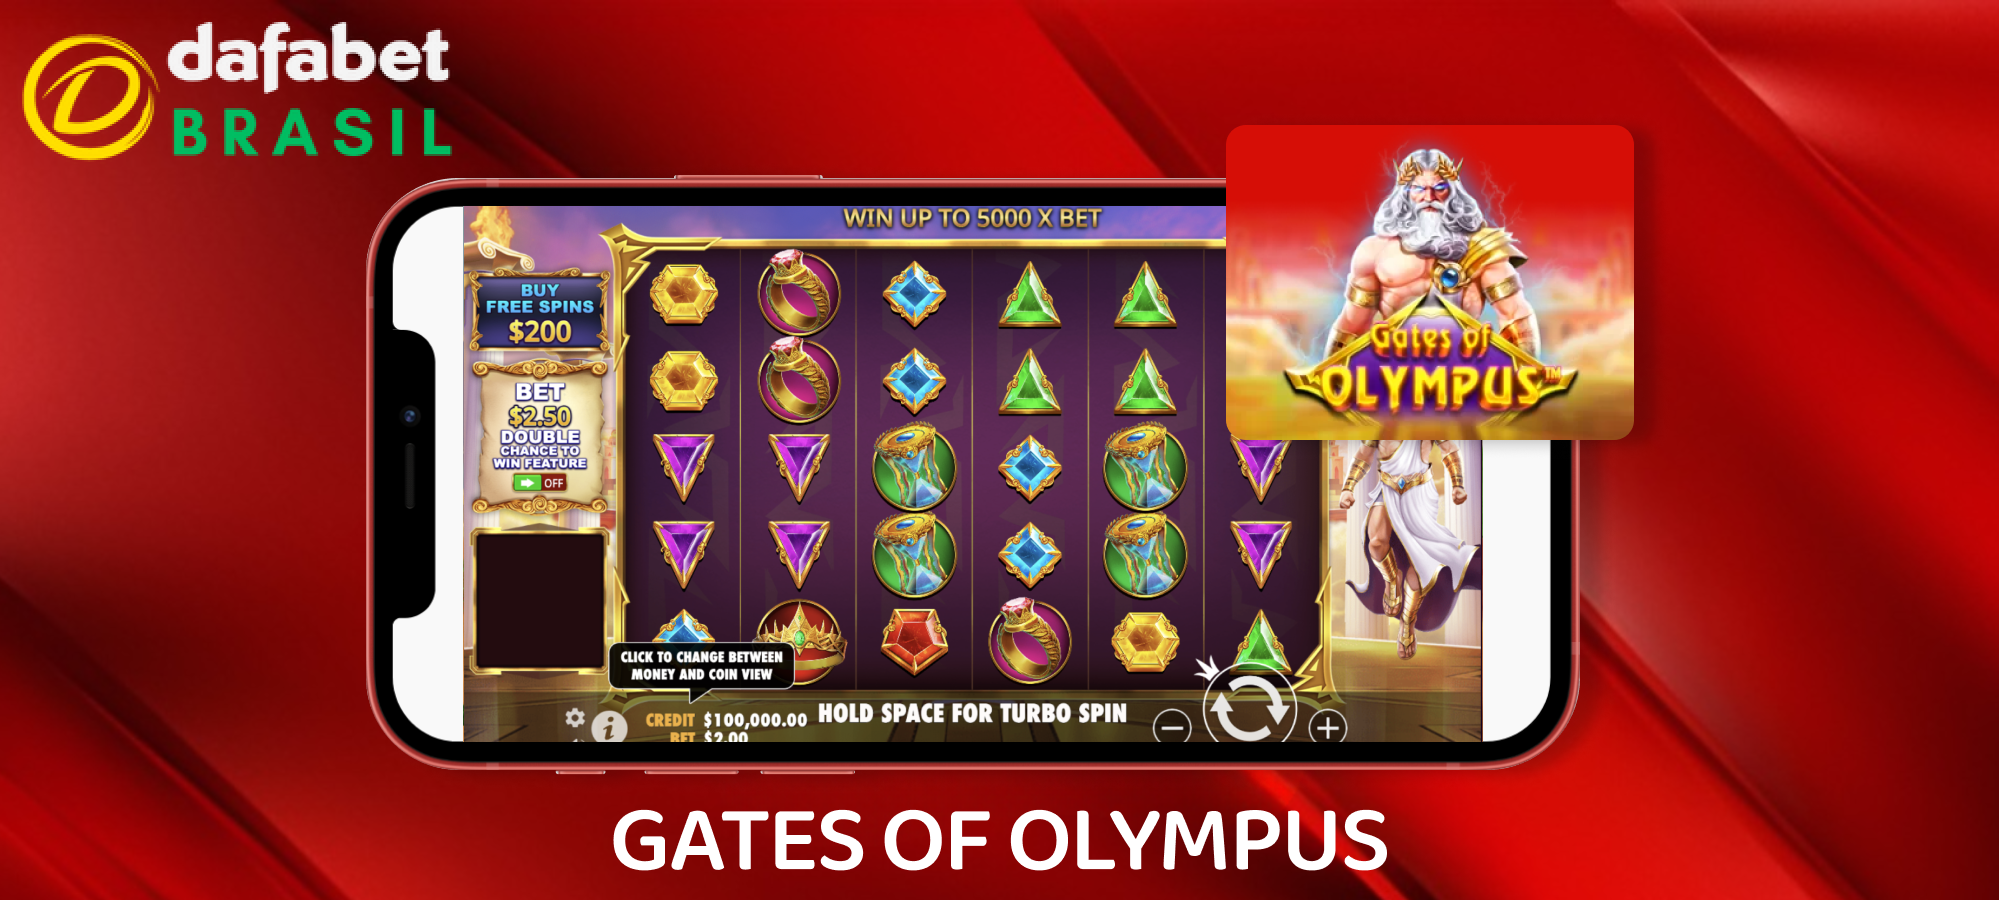 Dafabet Brasil - Gates of Olympus